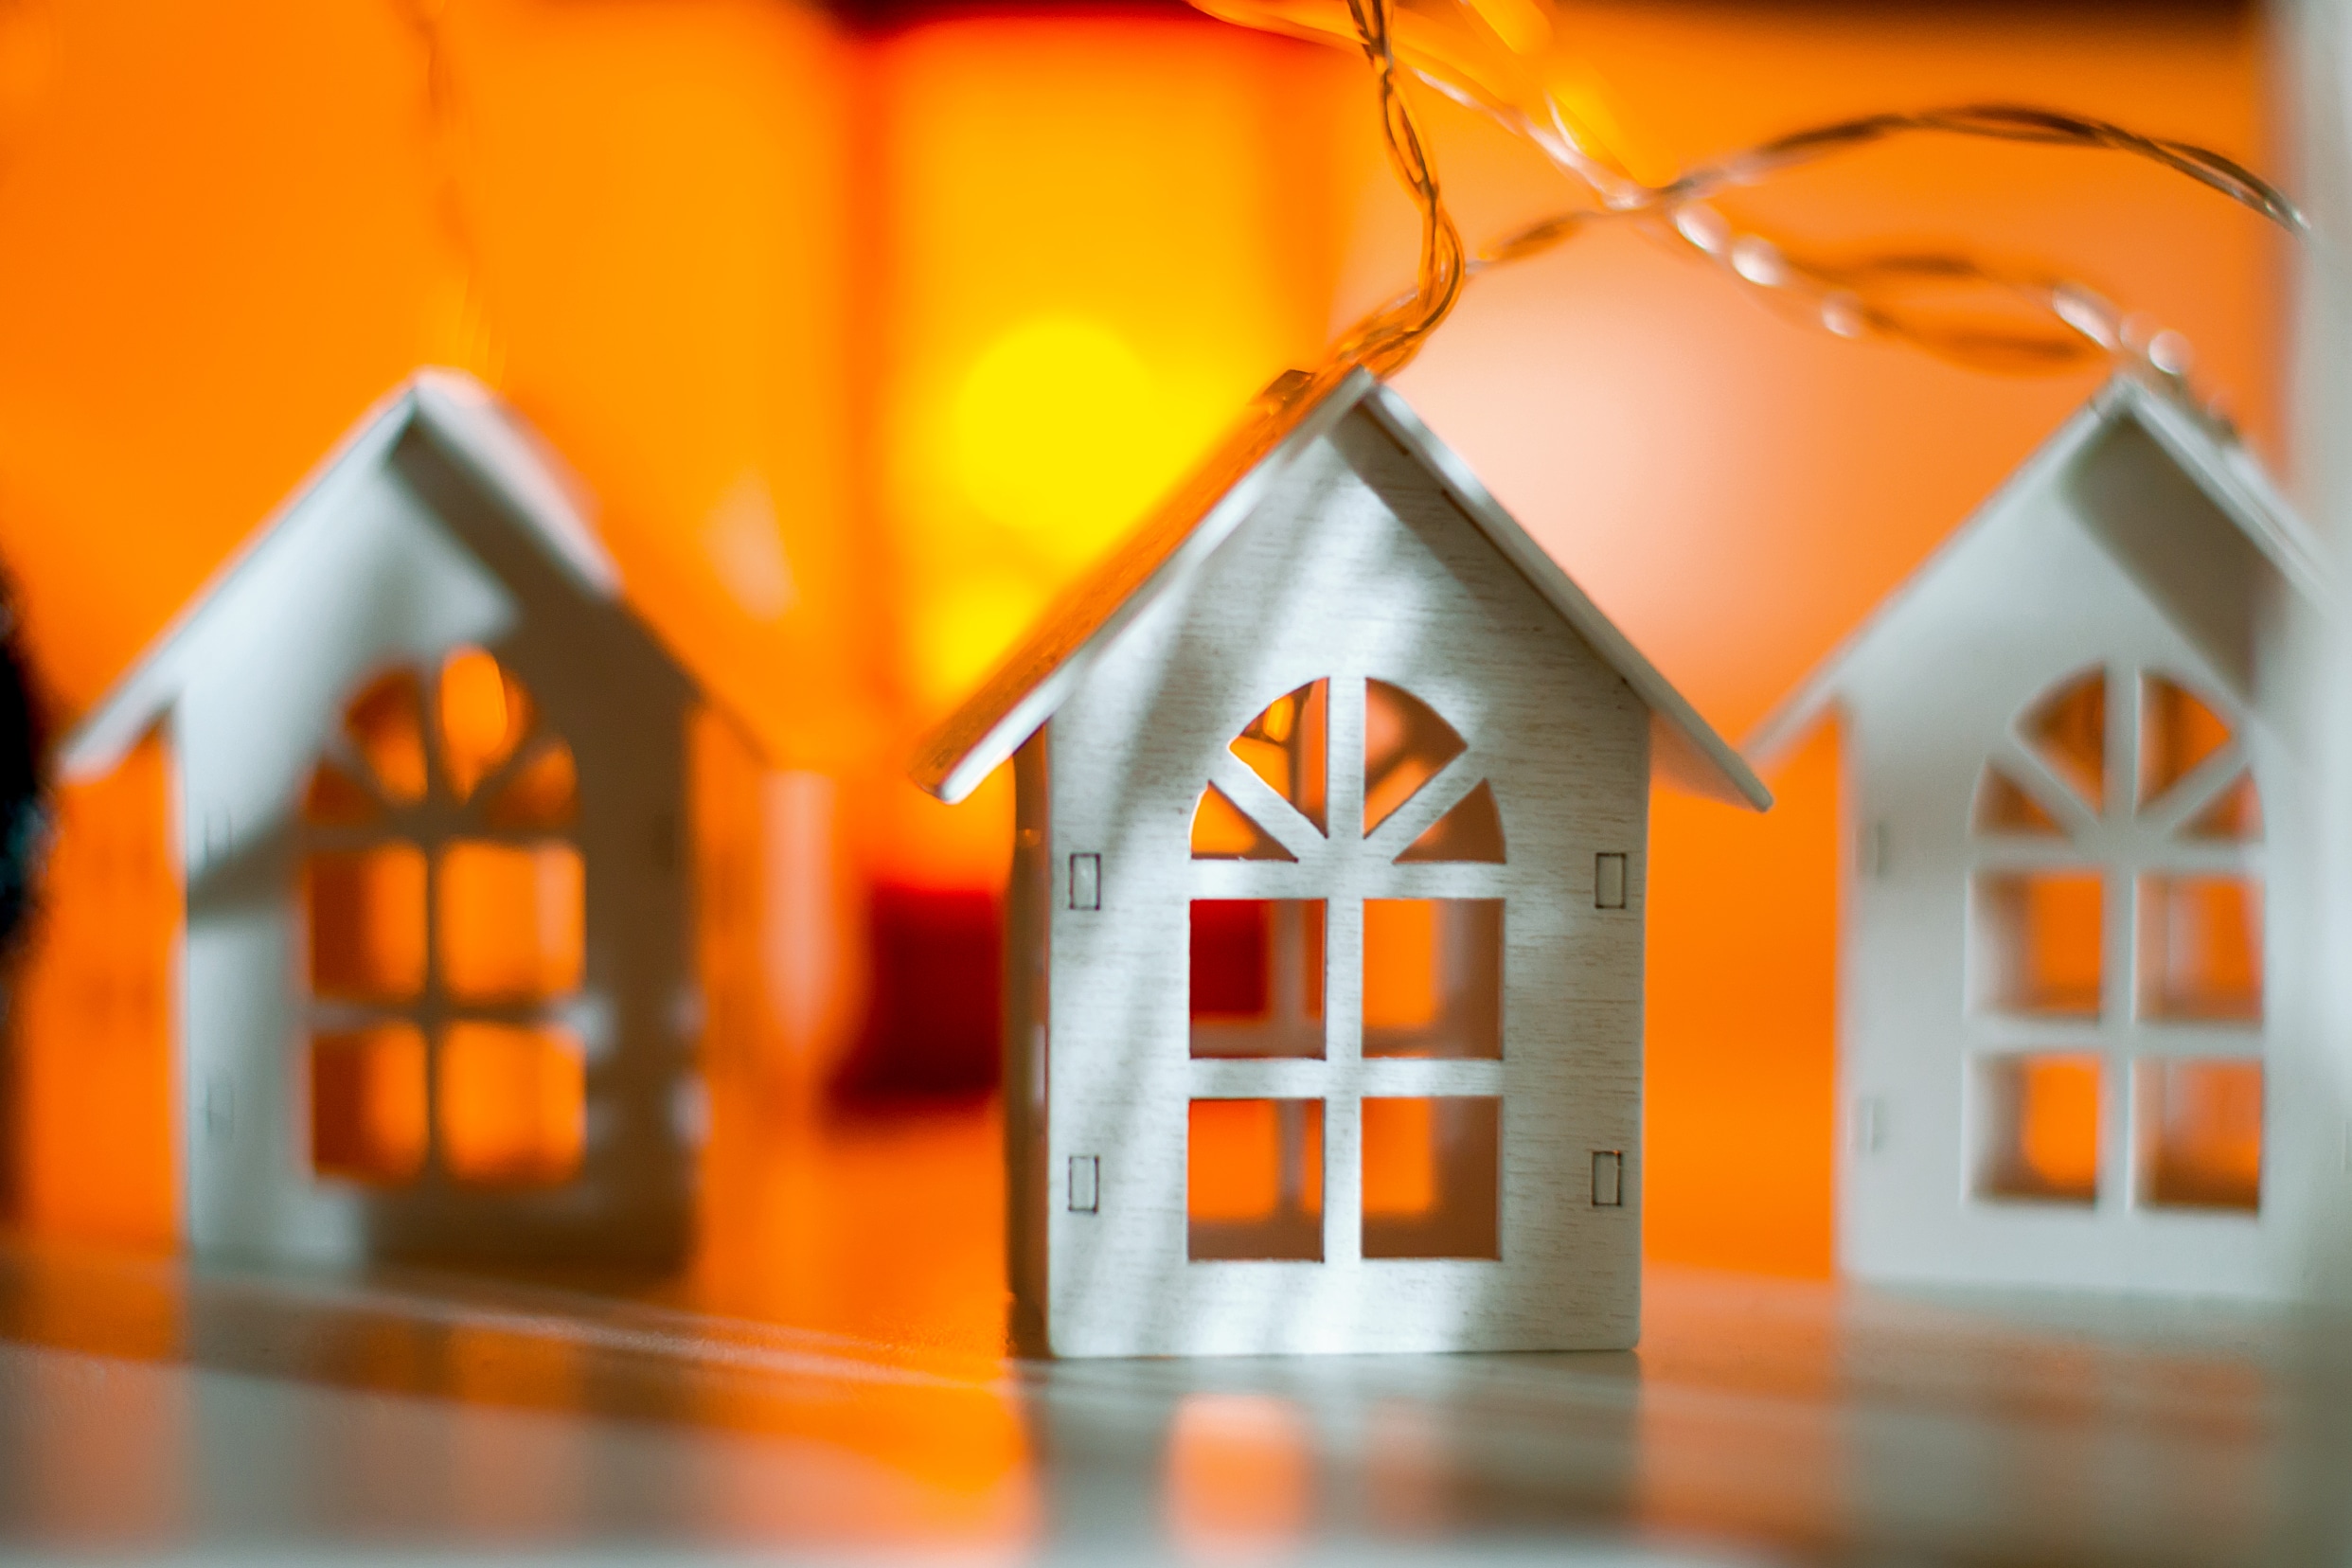 Miniatura de la fachada de una casa con el fondo iluminado de colores cálidos